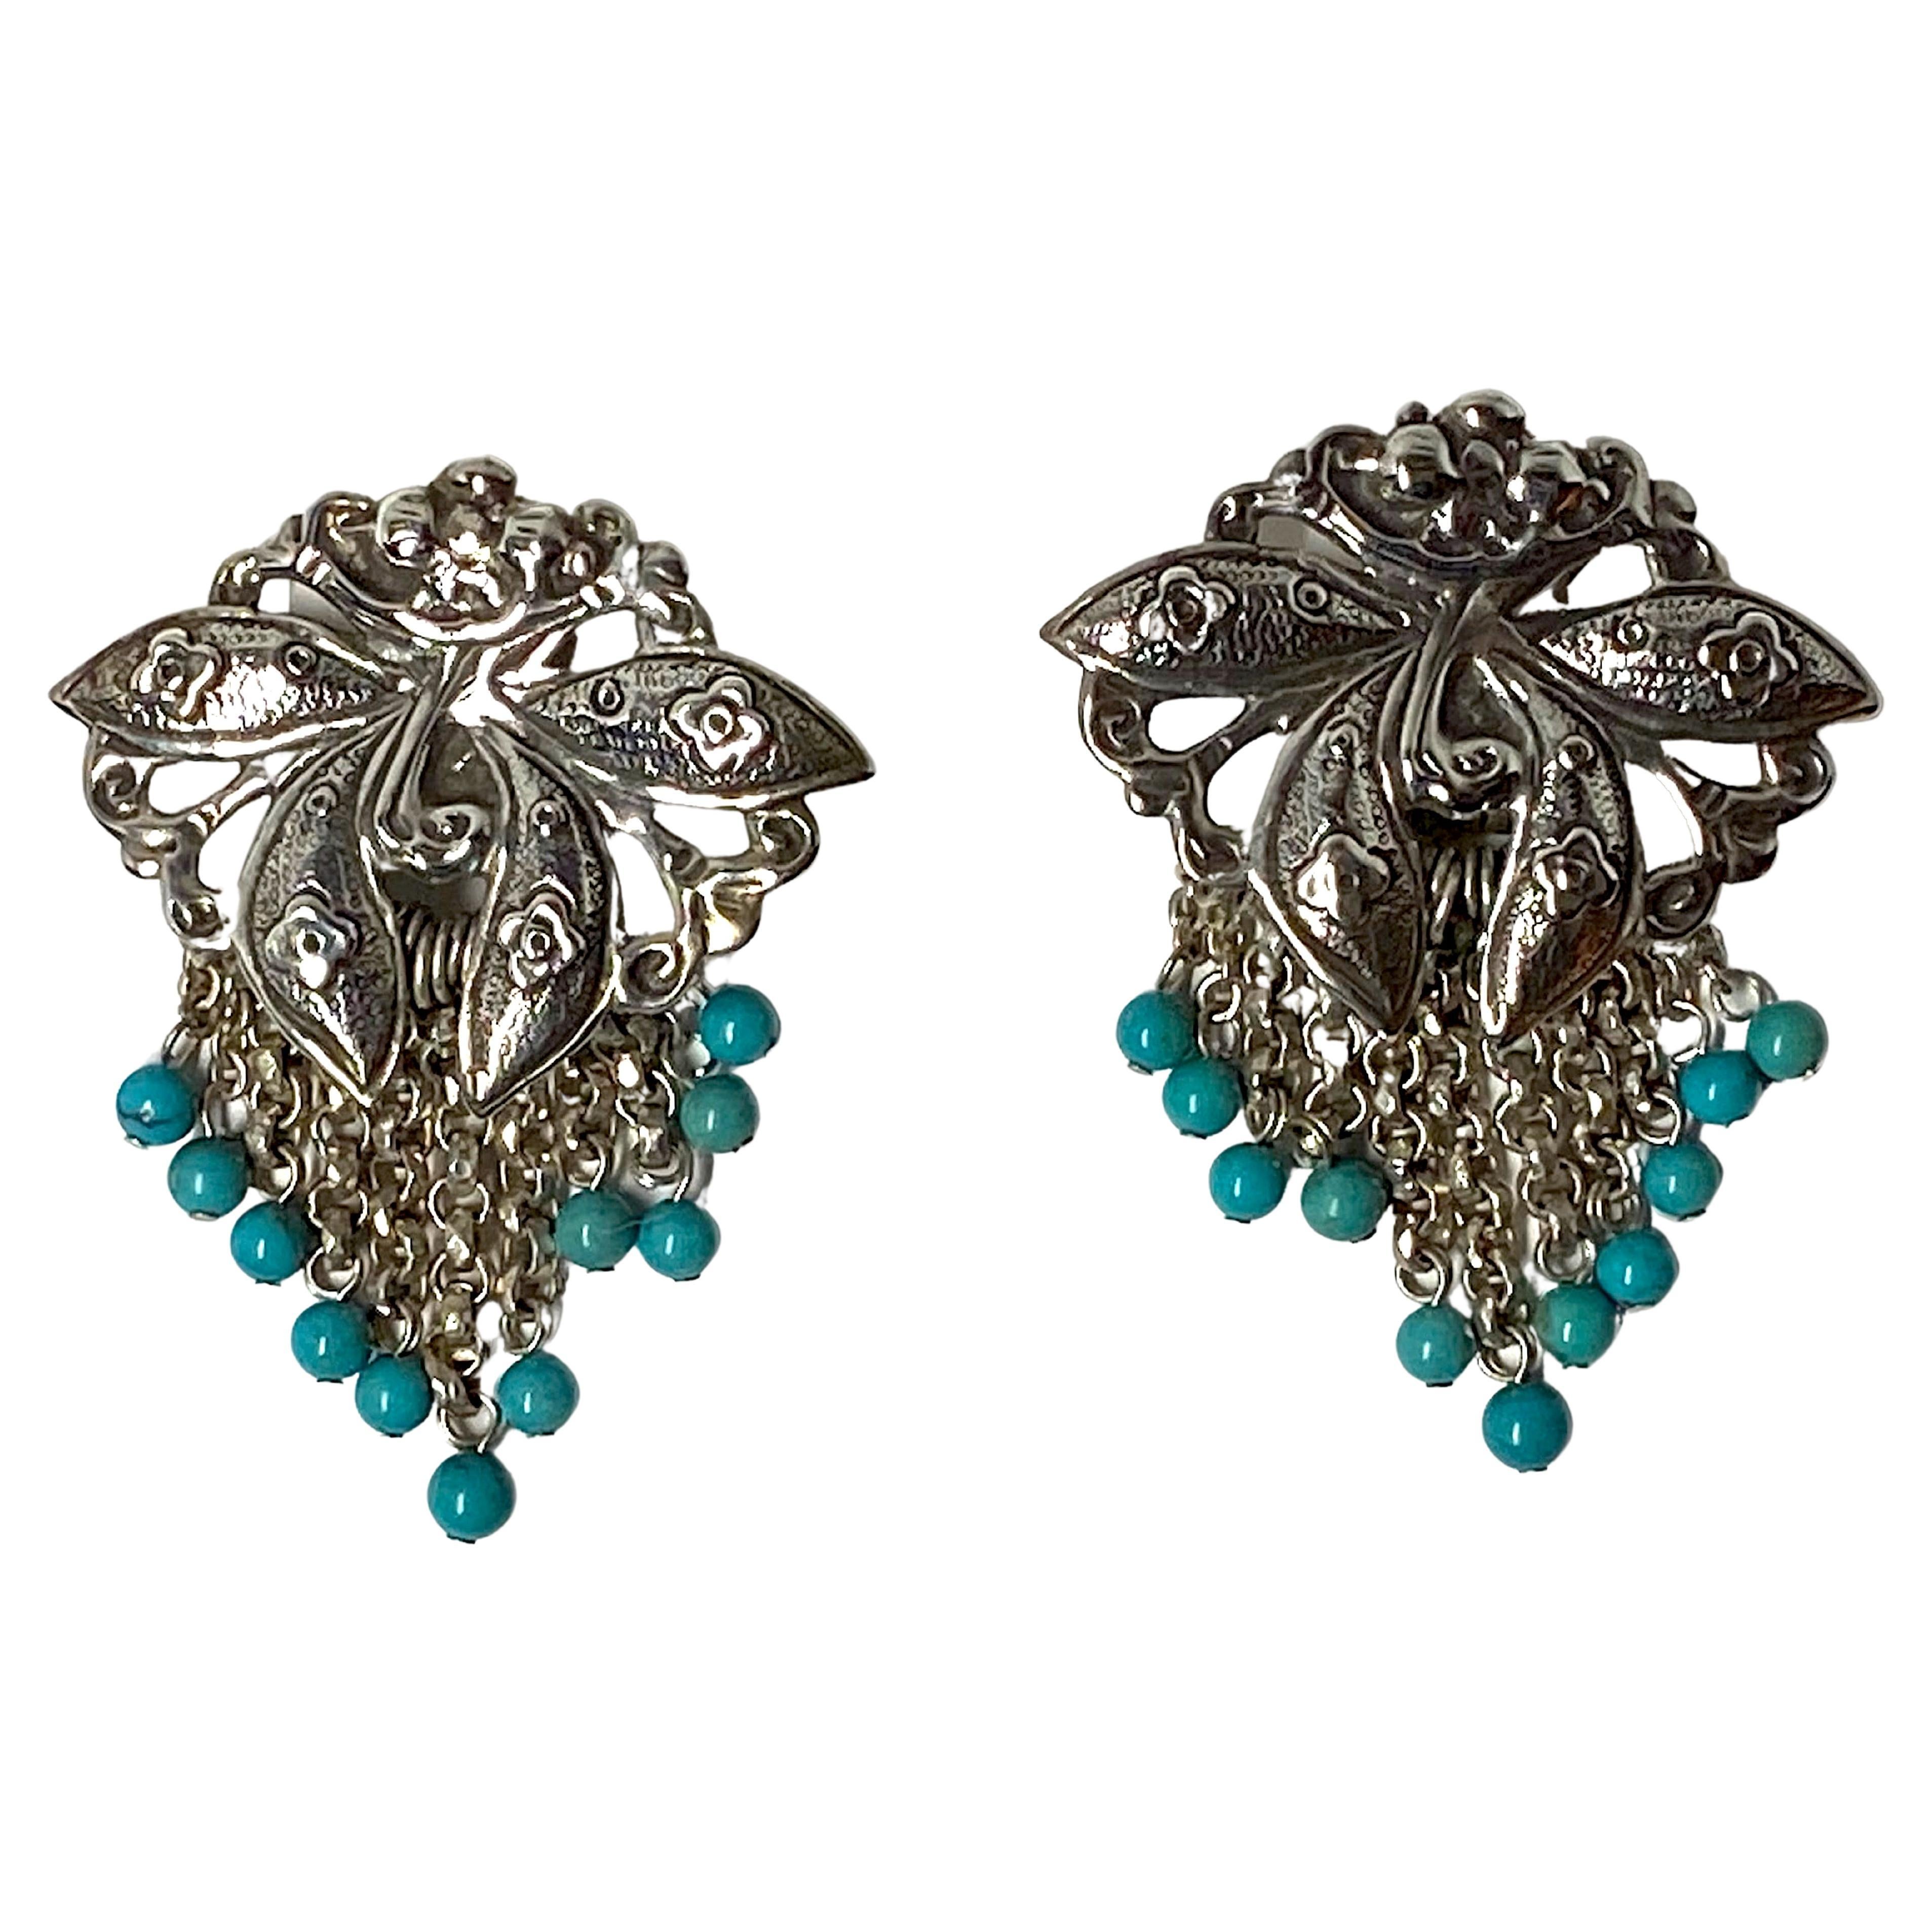 Une jolie paire de boucles d'oreilles à franges en argent sterling à motif de fleurs avec des perles turquoises de 1988 par la célèbre maison de joaillerie américaine Stephen Dweck. Le haut de chaque boucle d'oreille est une fleur stylisée à quatre